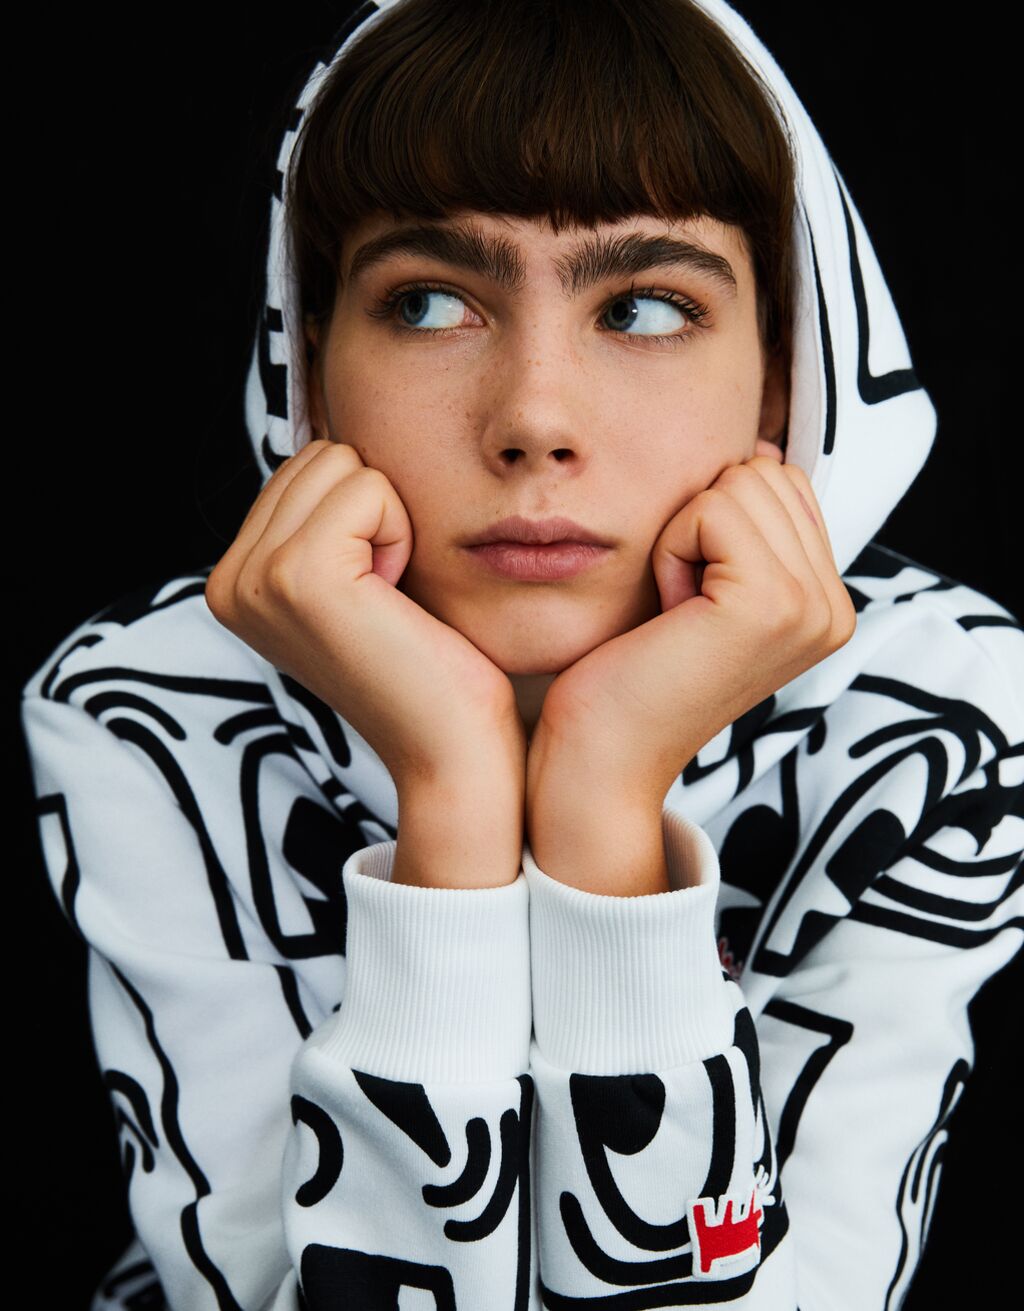 Keith Haring print hoodie